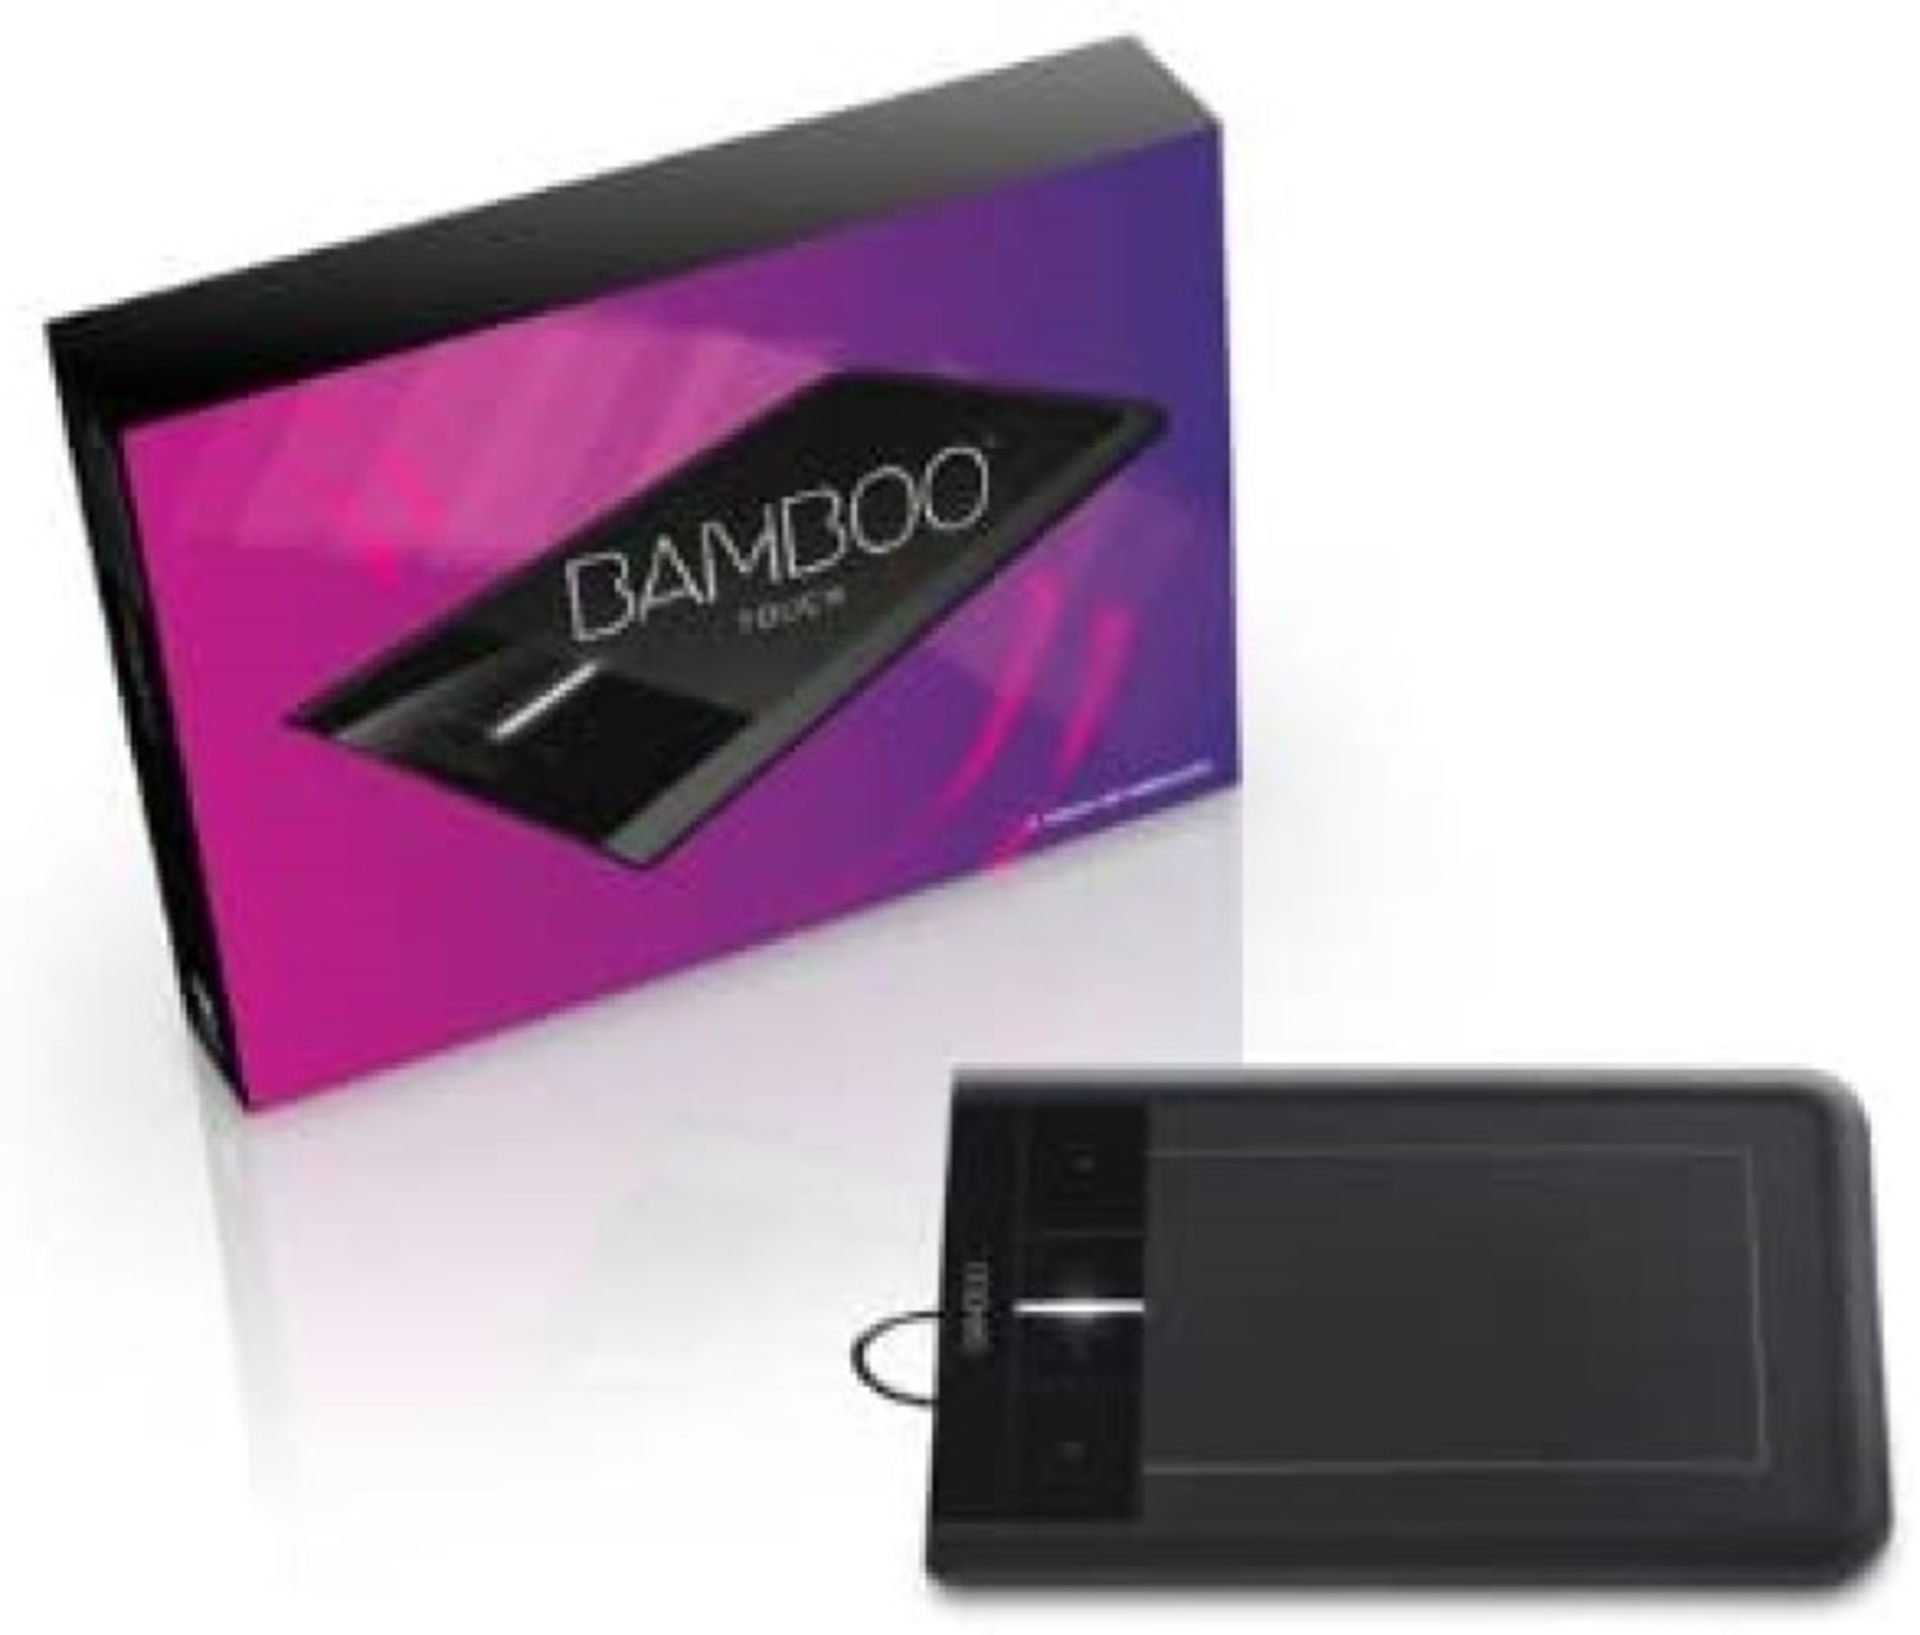 Bamboo Wireless Touchpad